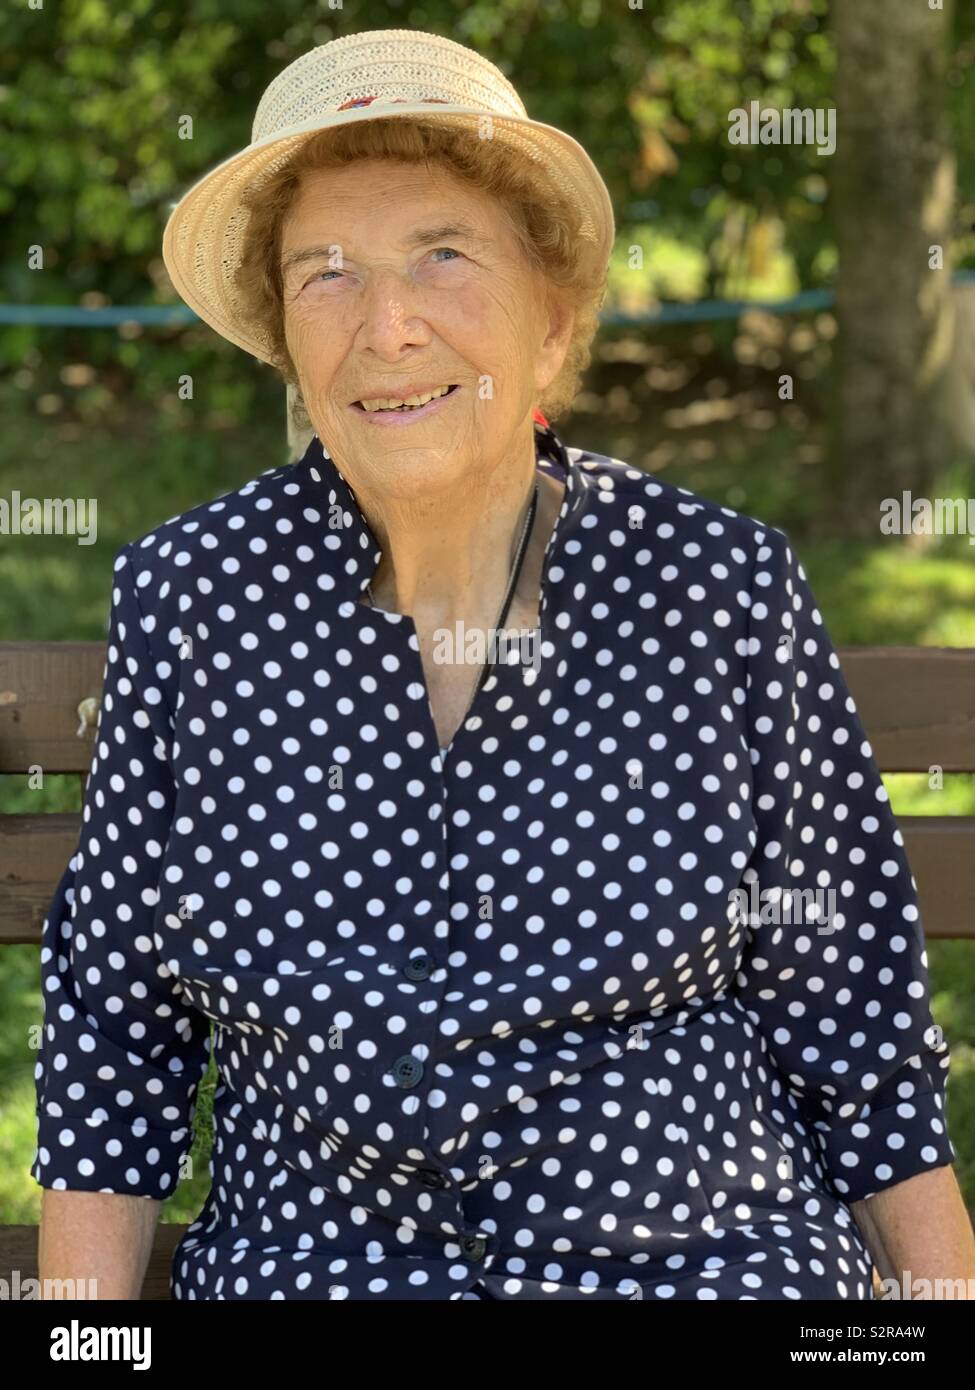 Portrait de grand-mère avec polka dot dress pendant un jour d'été Banque D'Images